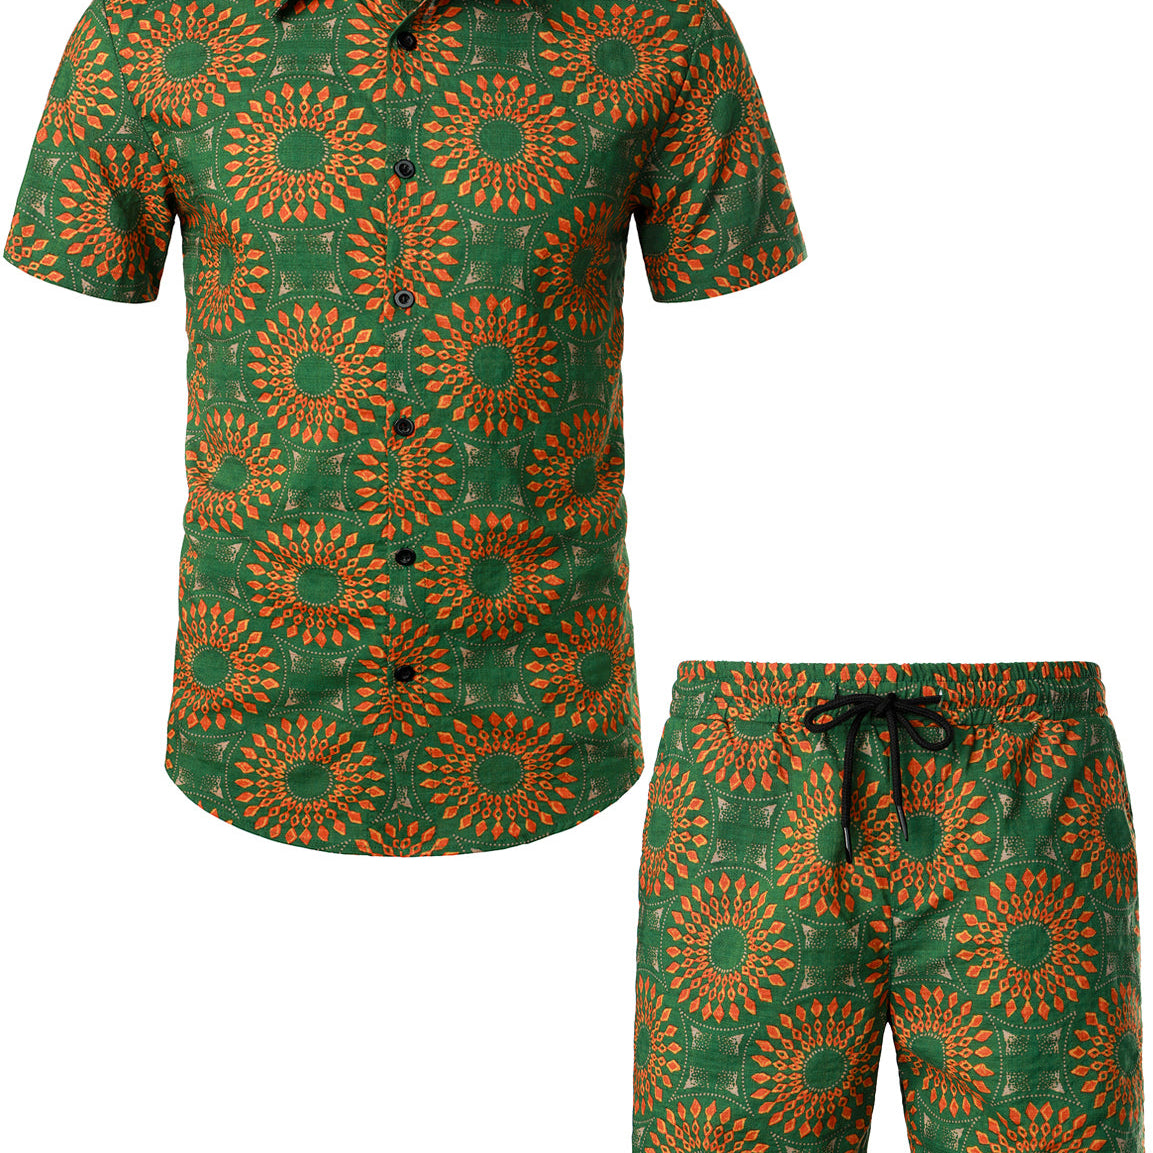 Men's Casual Boho 70s Vintage Green Matching Shirt and Shorts Set